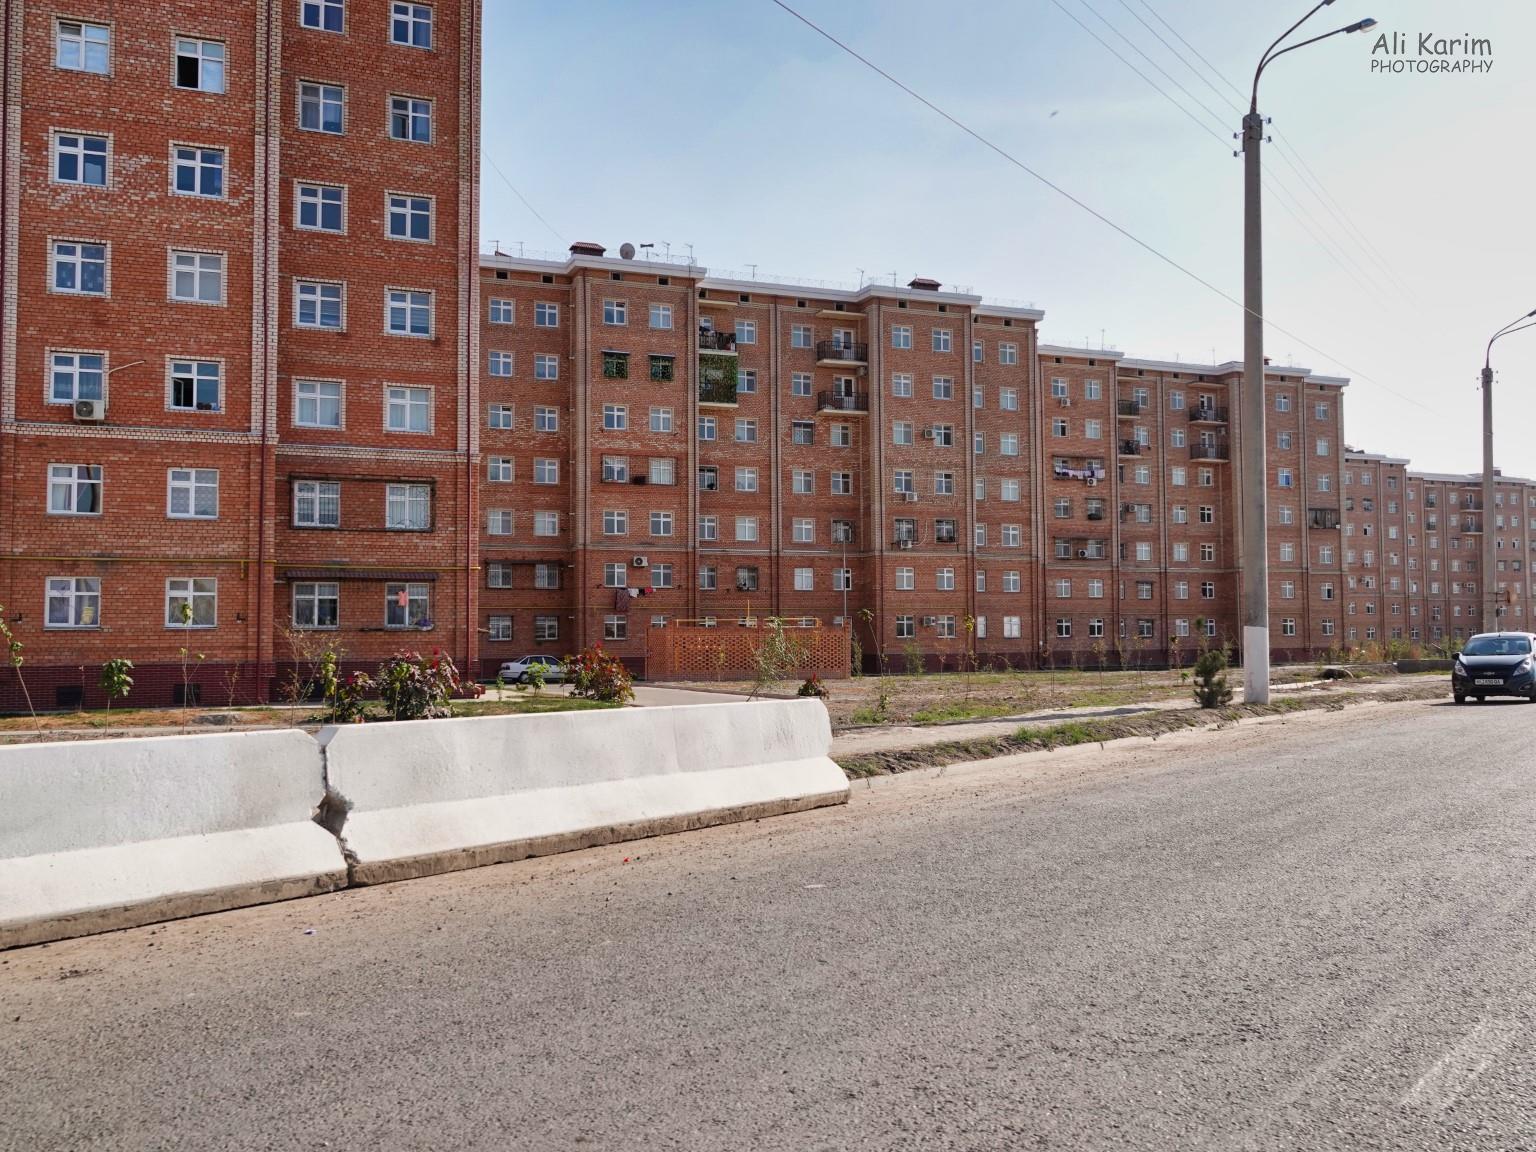 Tashkent, Oct 2019, Soviet-era style apartments opposite the hotel